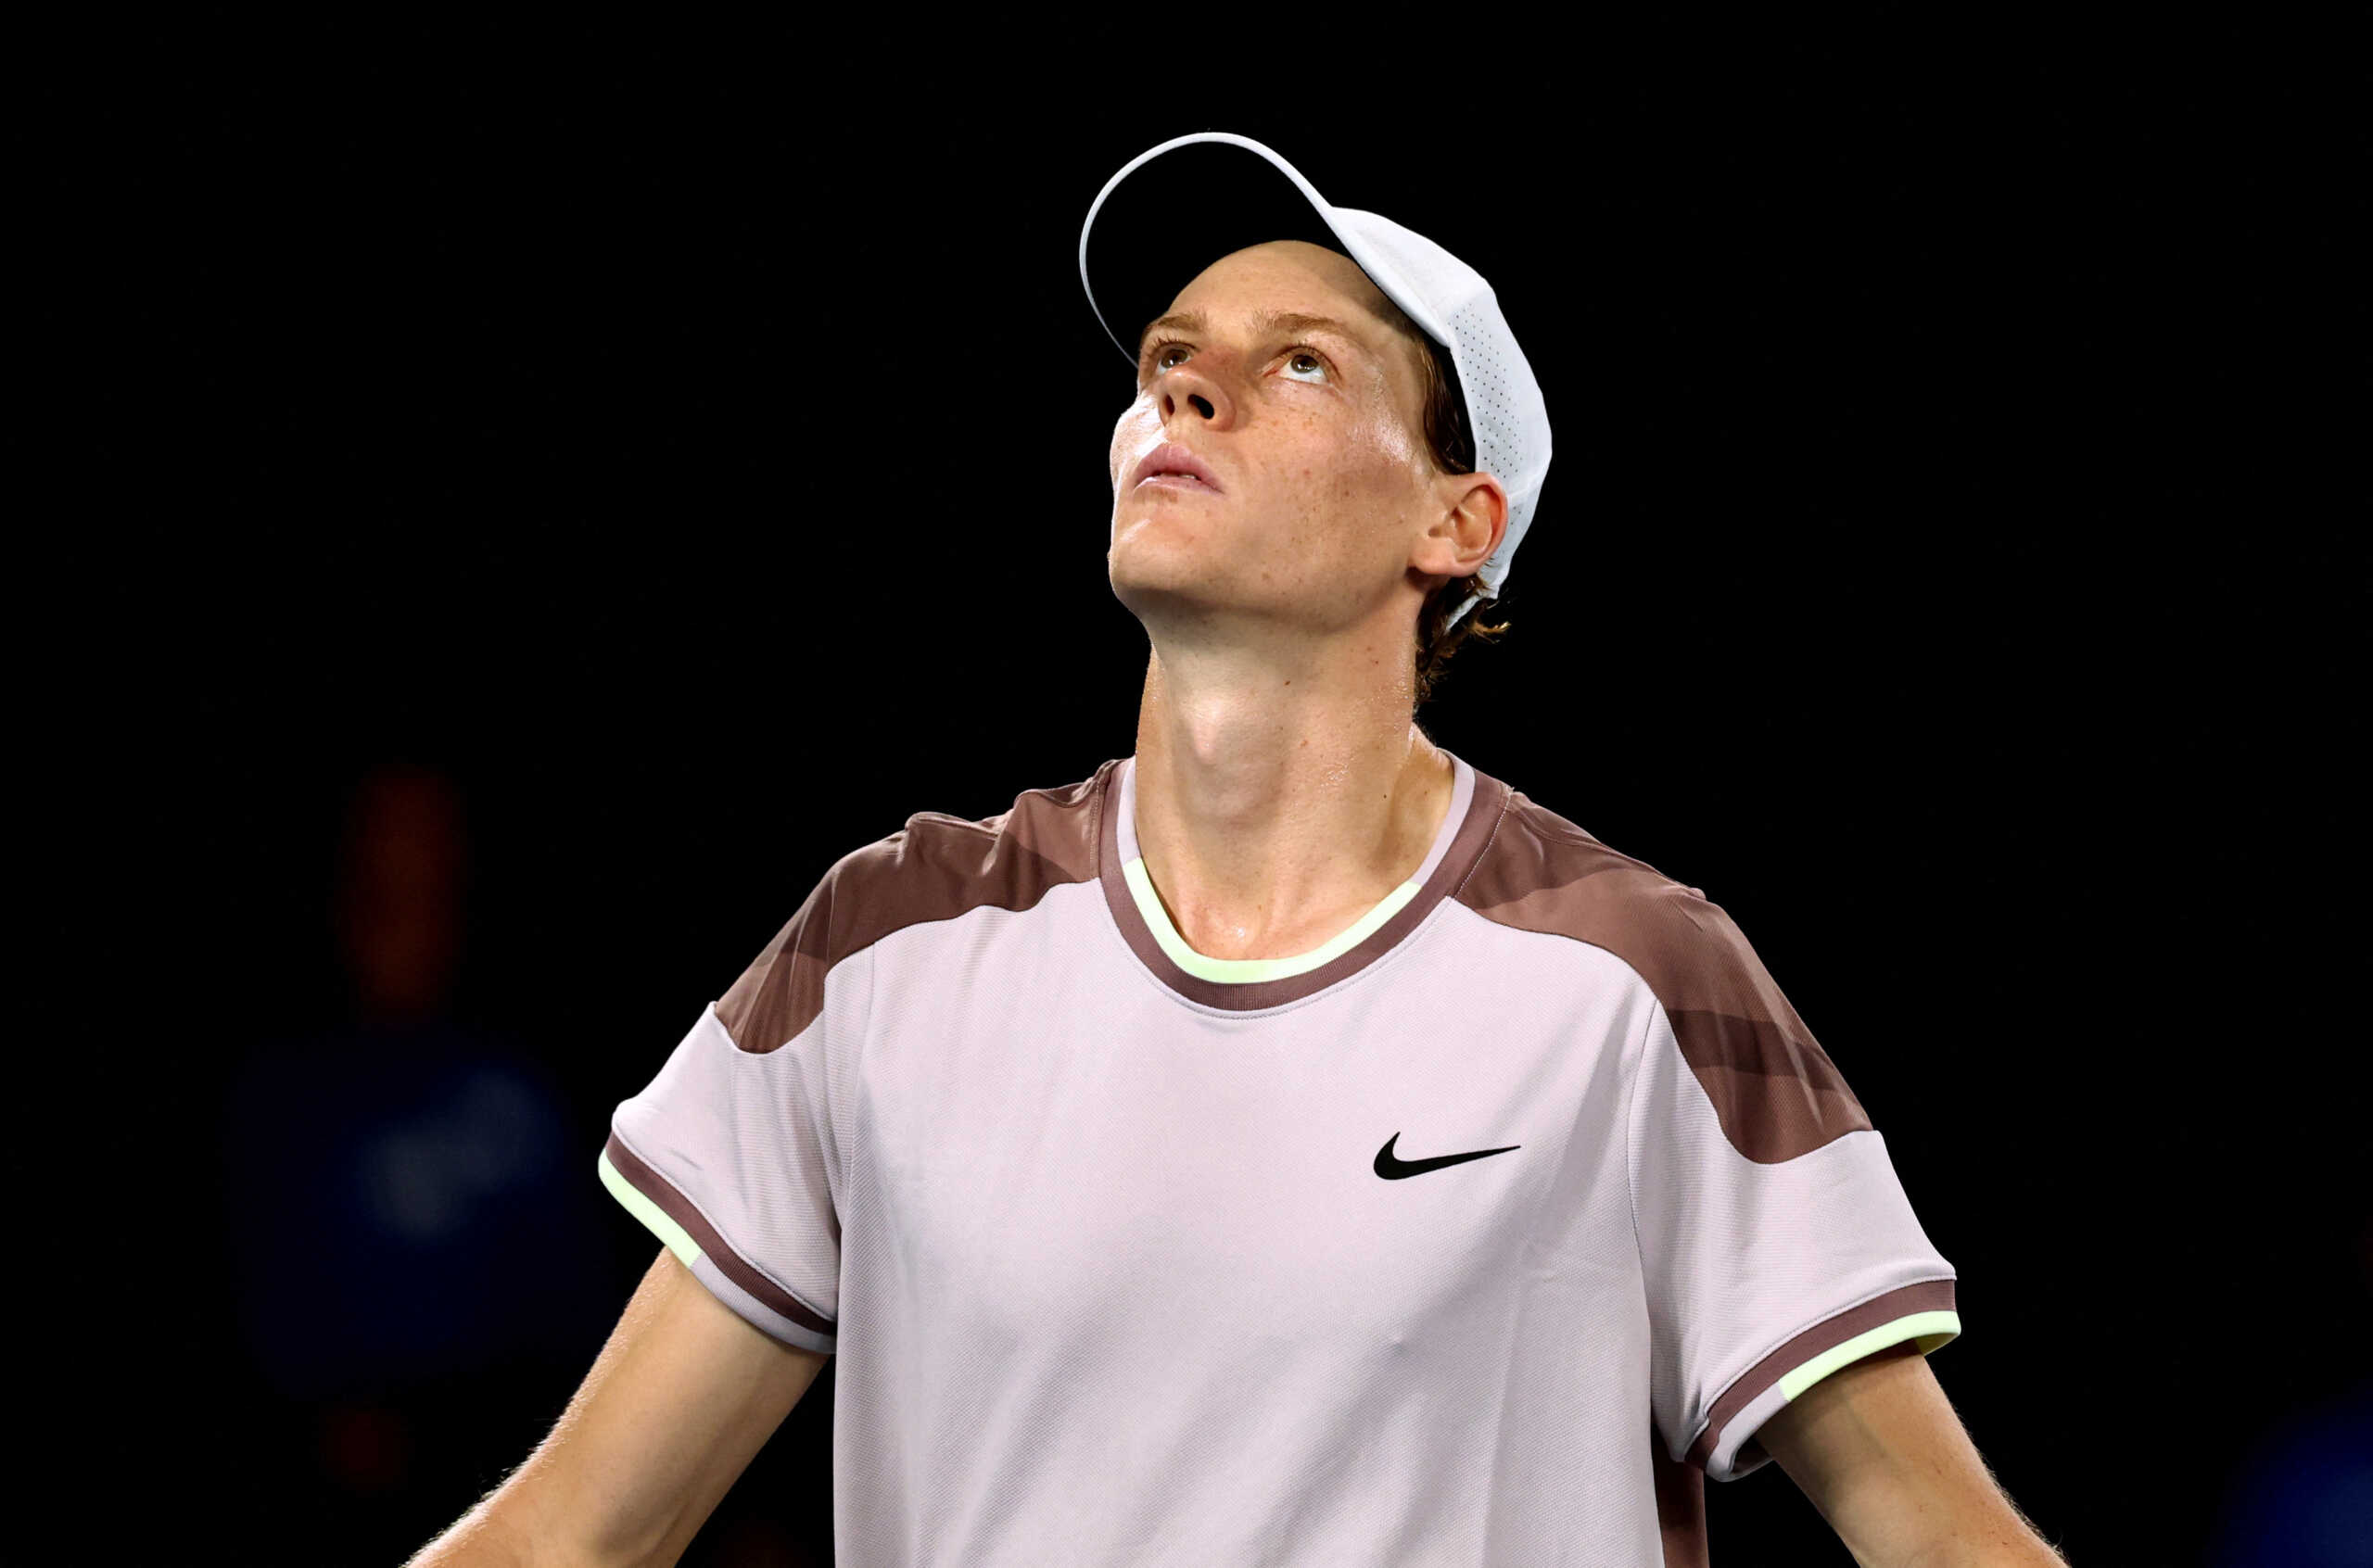 Σίνερ – Μεντβέντεφ 3-2: Επική ανατροπή στον τελικό του Australian Open και πρώτος τίτλος για τον Ιταλό τενίστα